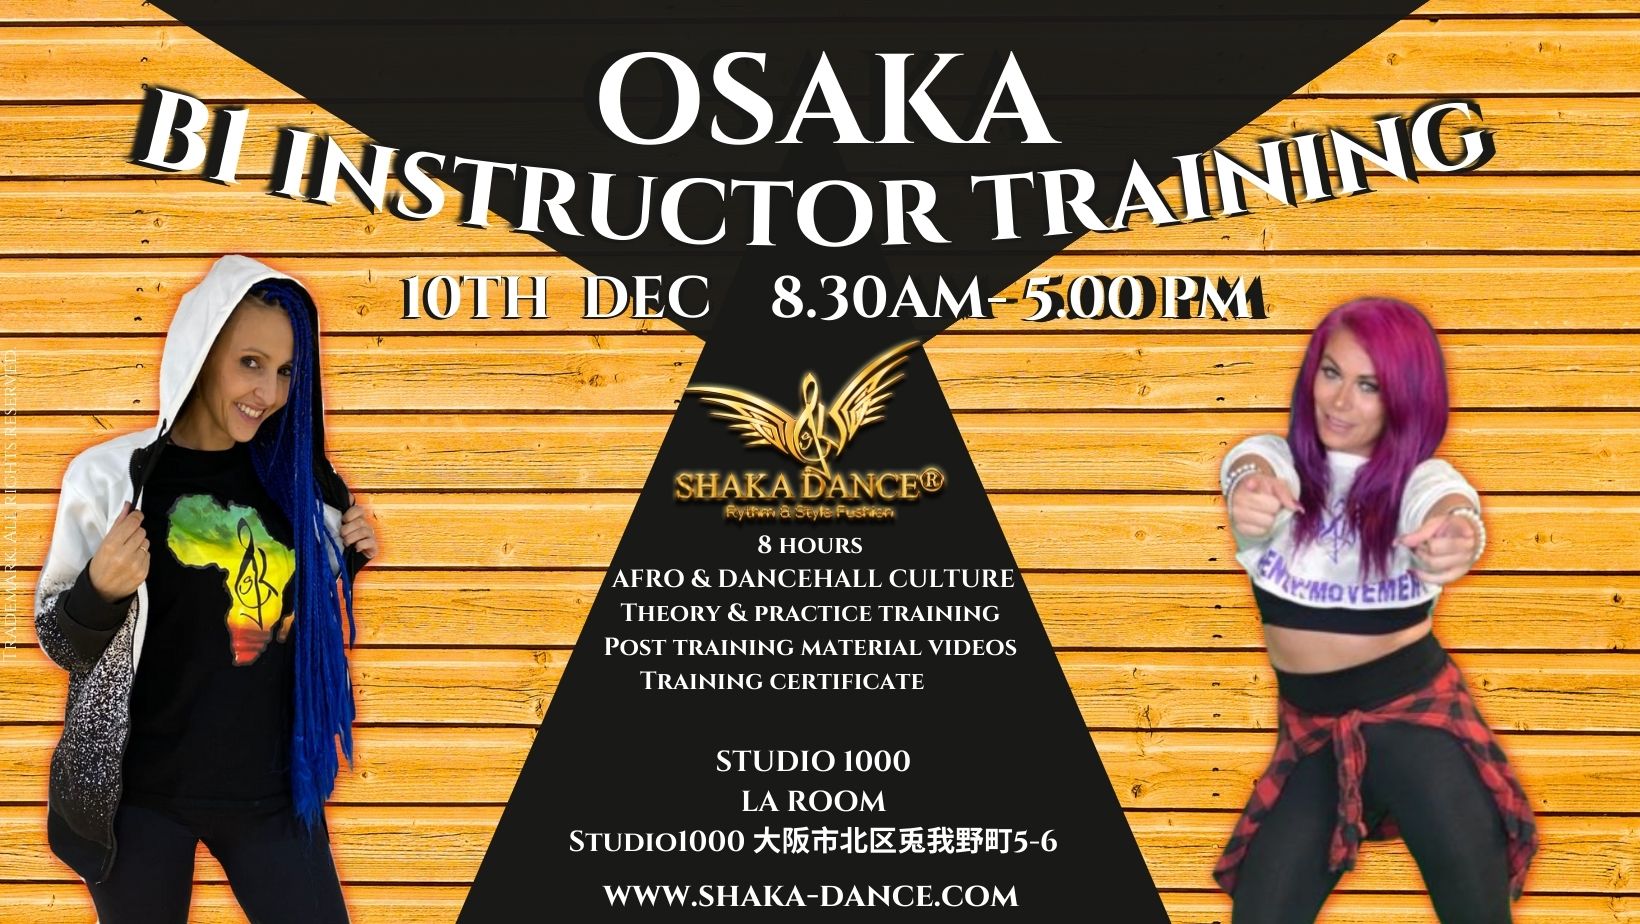 SHAKA DANCE® B1 Instructor Training Osaka